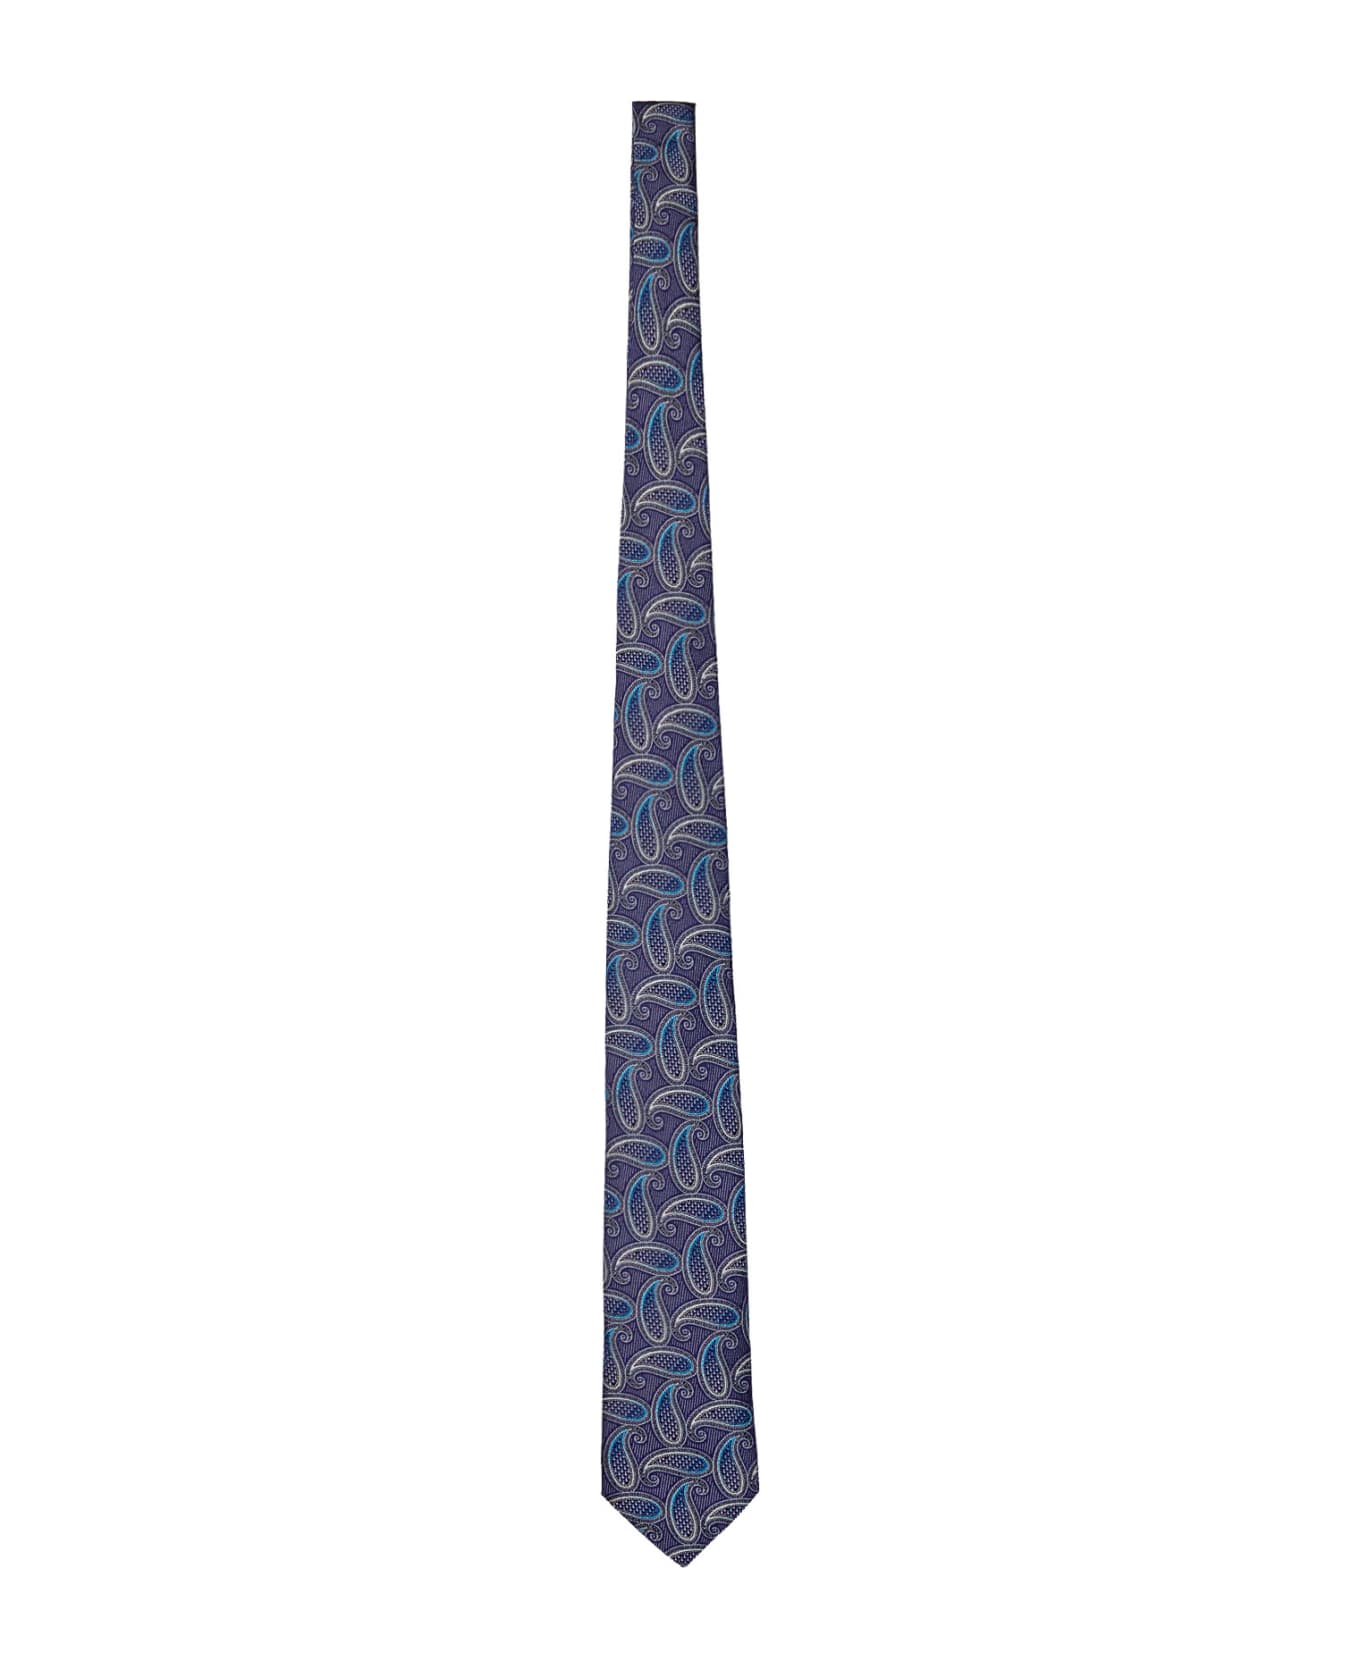 Etro Patterned Tie - MULTICOLOR FDO BLU